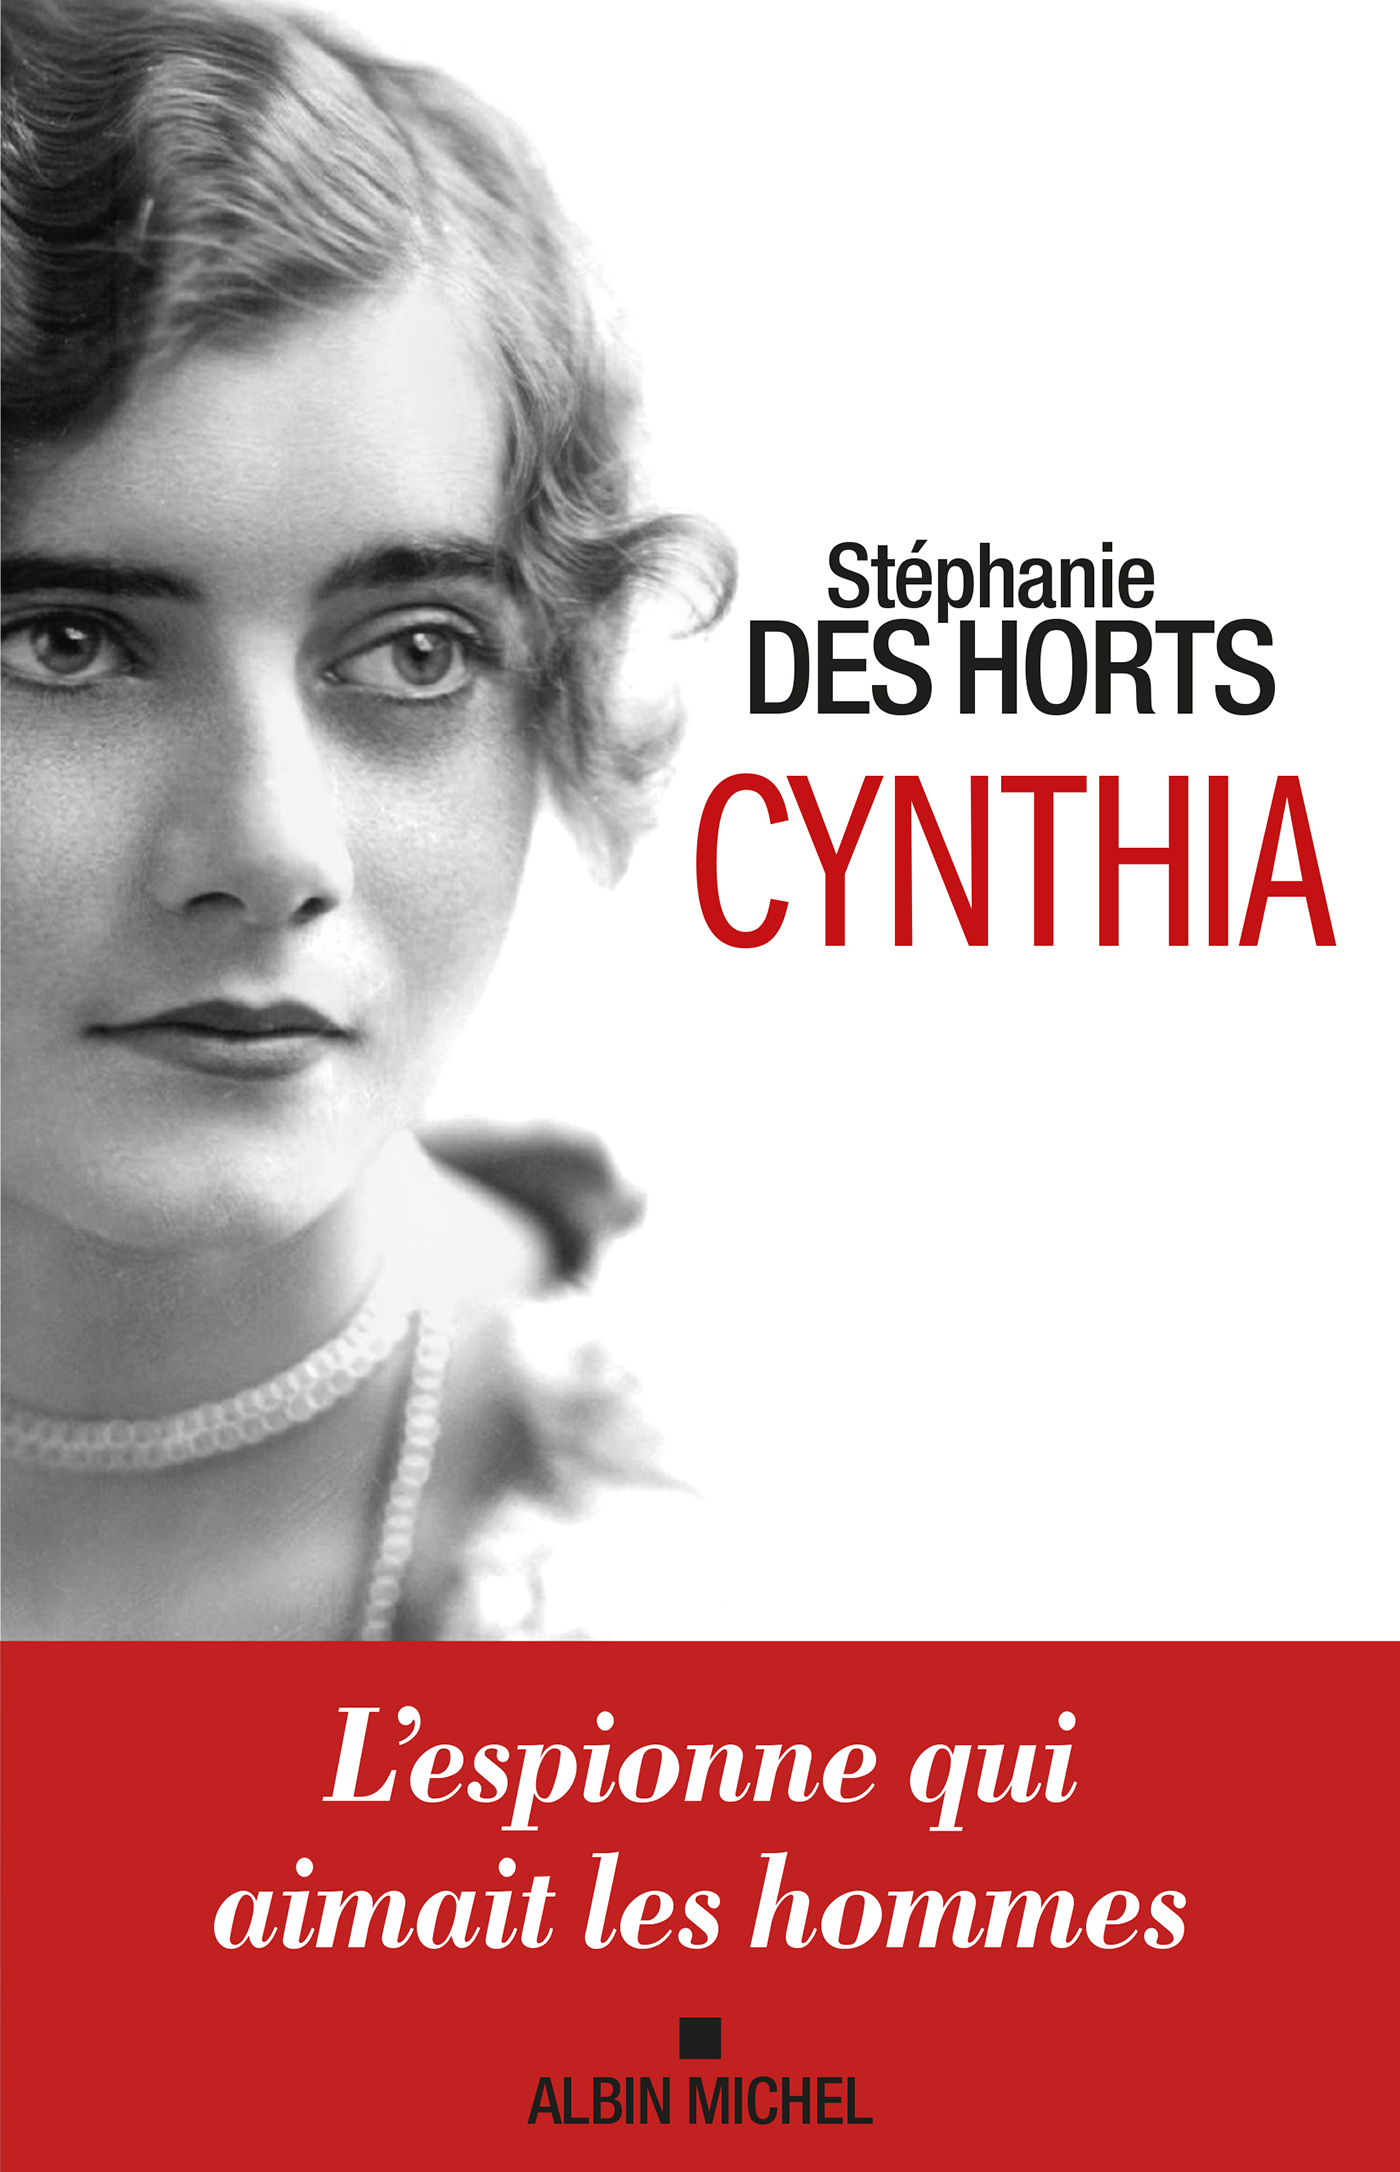 Couverture du livre Cynthia